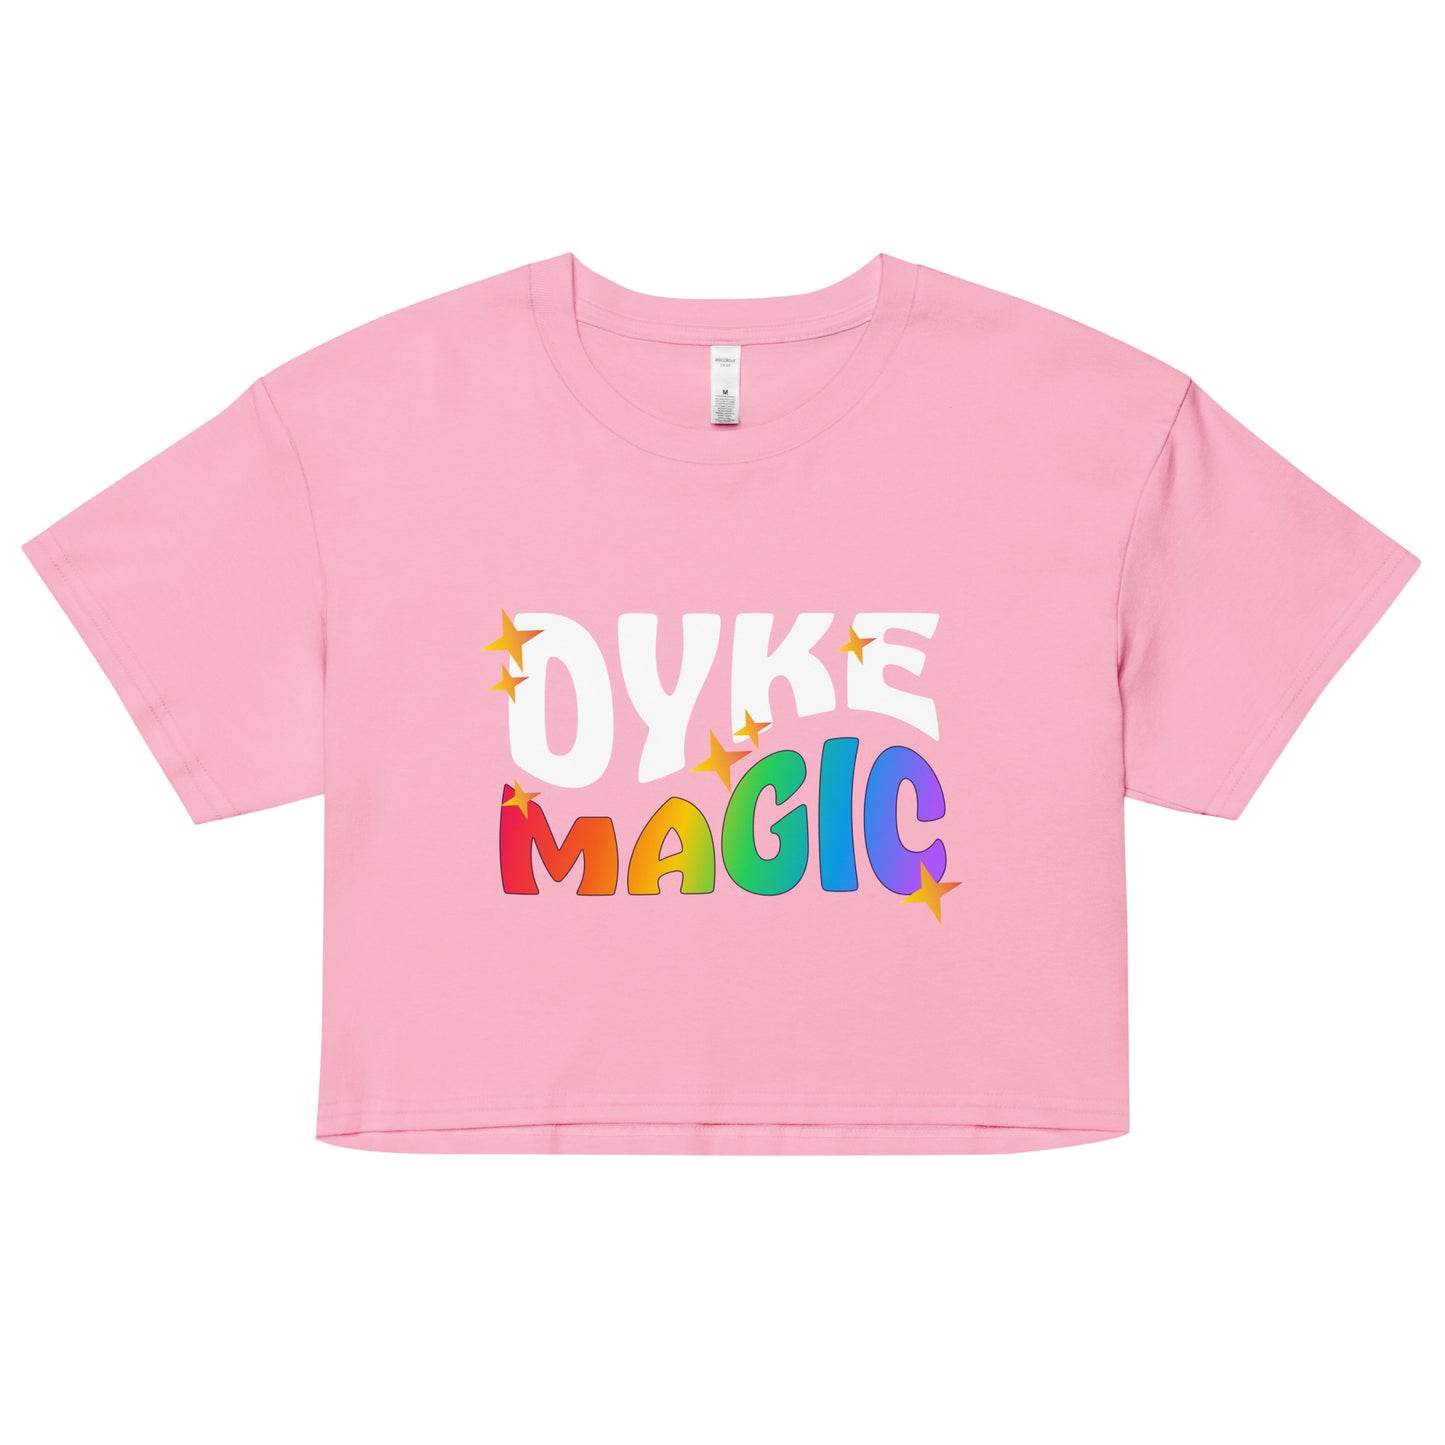 Crop Top: Magie de Dyke